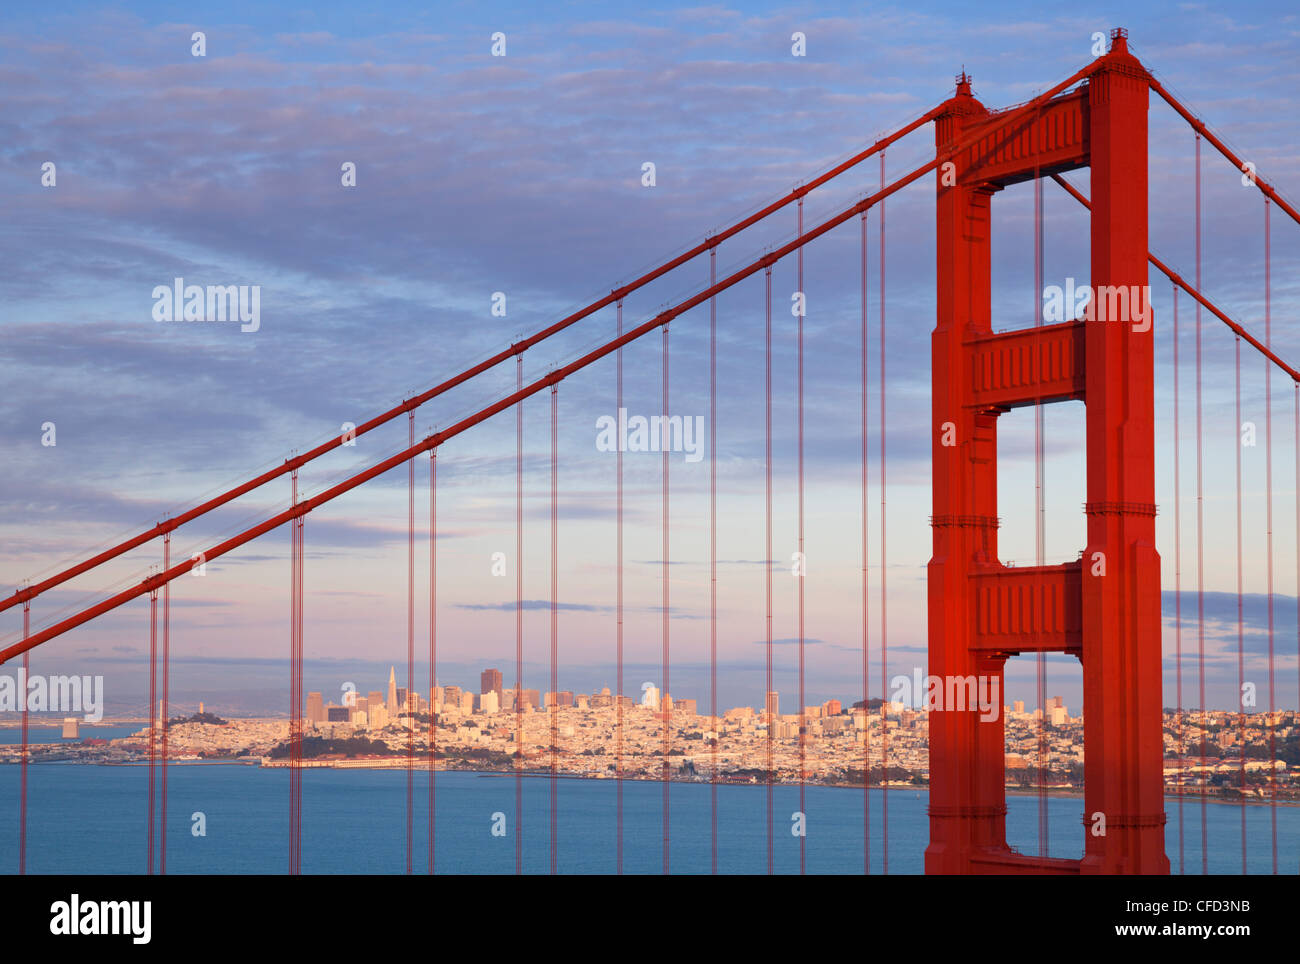 The Golden Gate Bridge, Marin County, San Francisco, California, USA Stock Photo